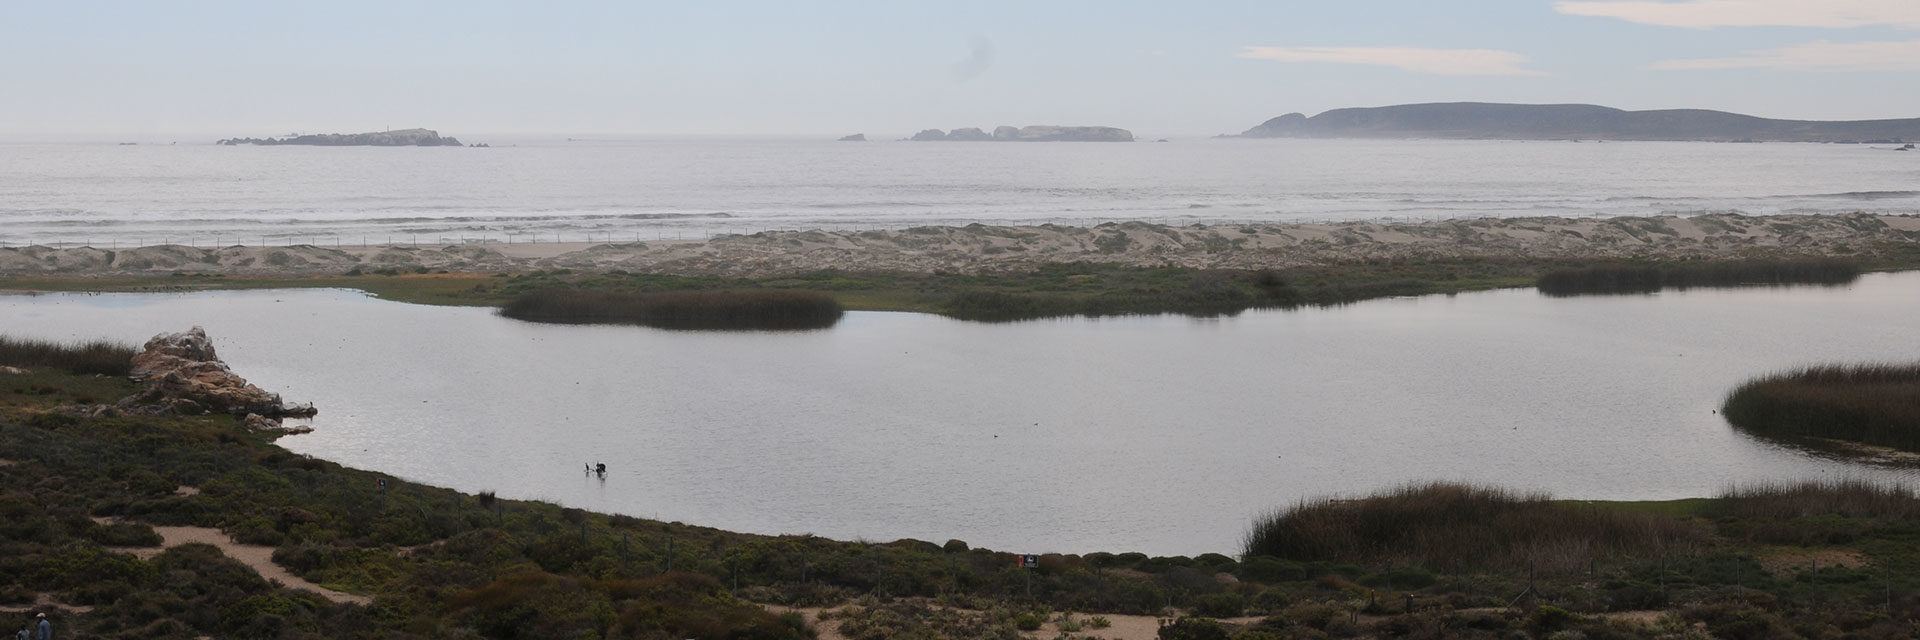 Plan de manejo ambiental de Laguna Conchalí – Minera Los Pelambres